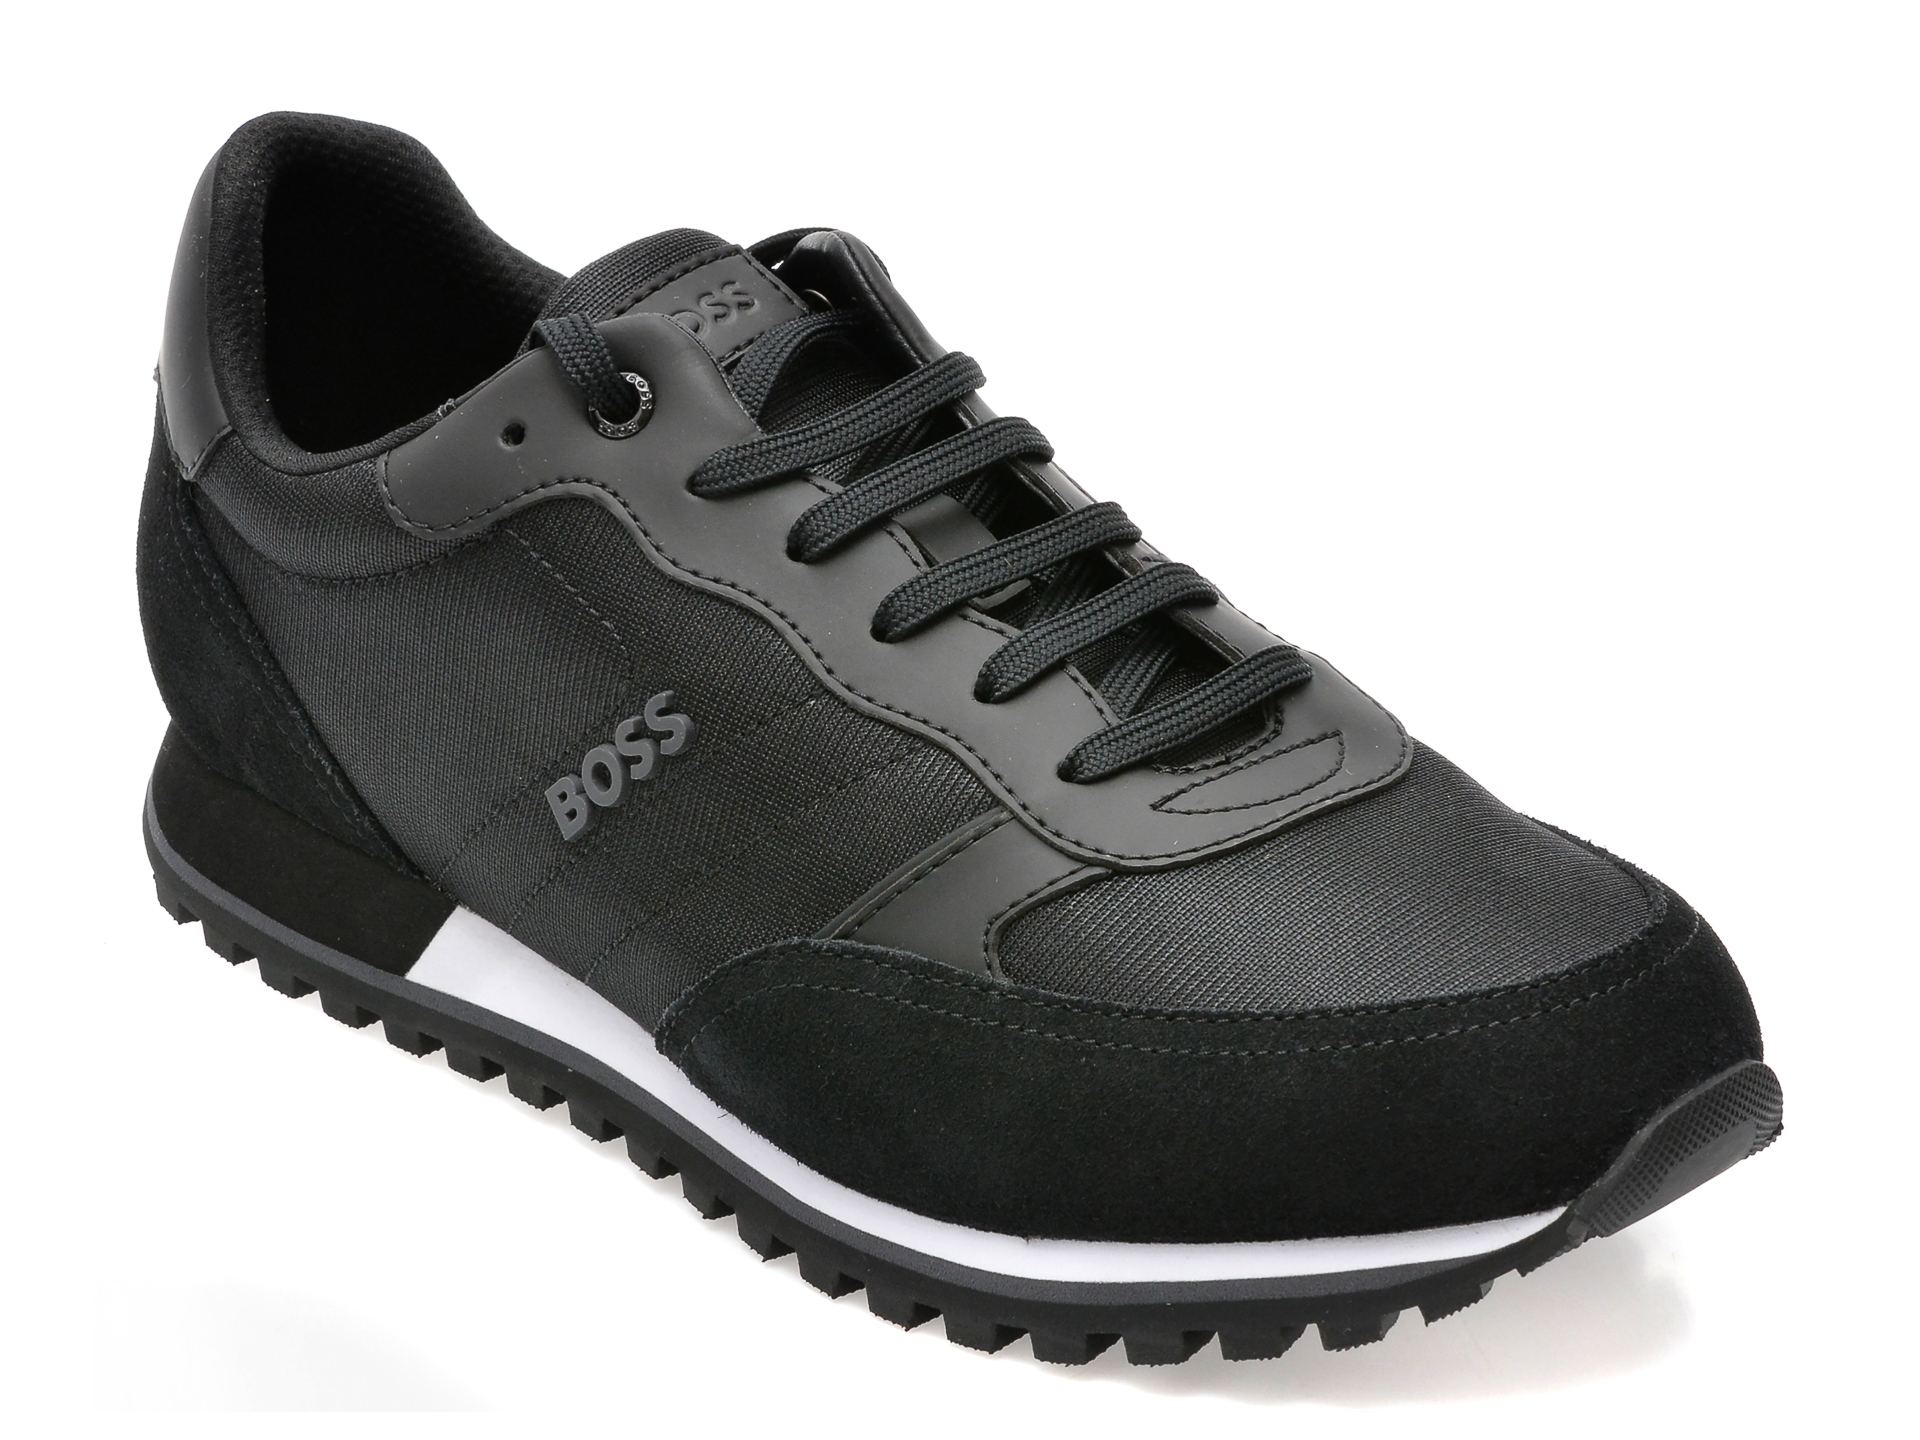 Pantofi sport HUGO BOSS negri, 152, din material textil si piele naturala /barbati/pantofi